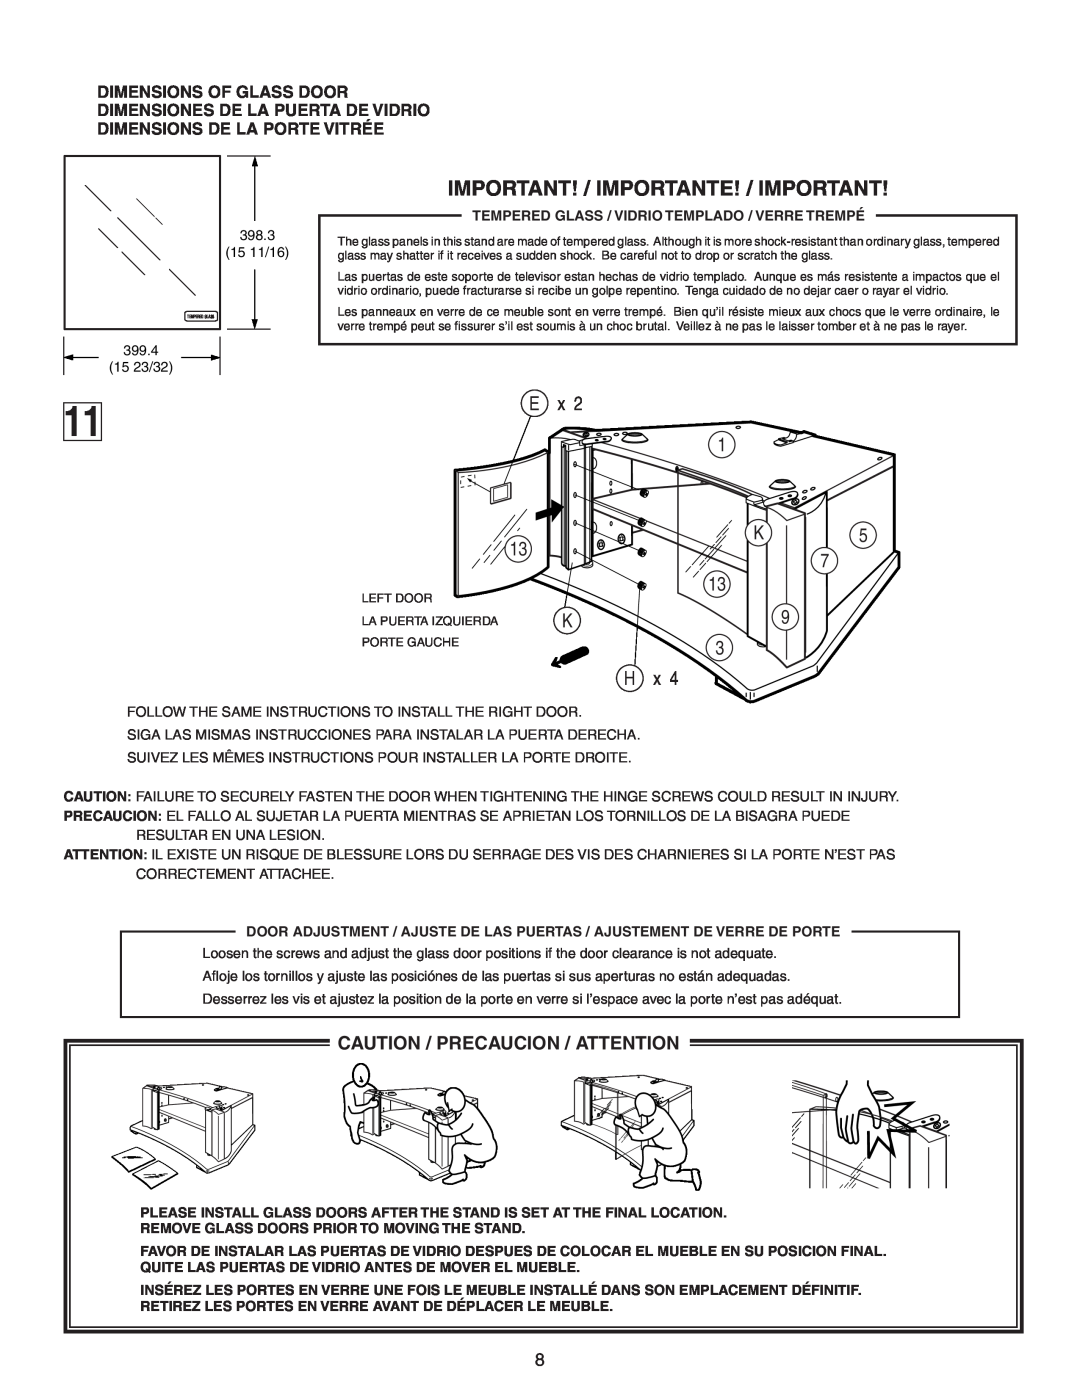 Sony SU-36F2 manual Important! / Importante! / Important, 13 3 H x, Caution / Precaucion / Attention 